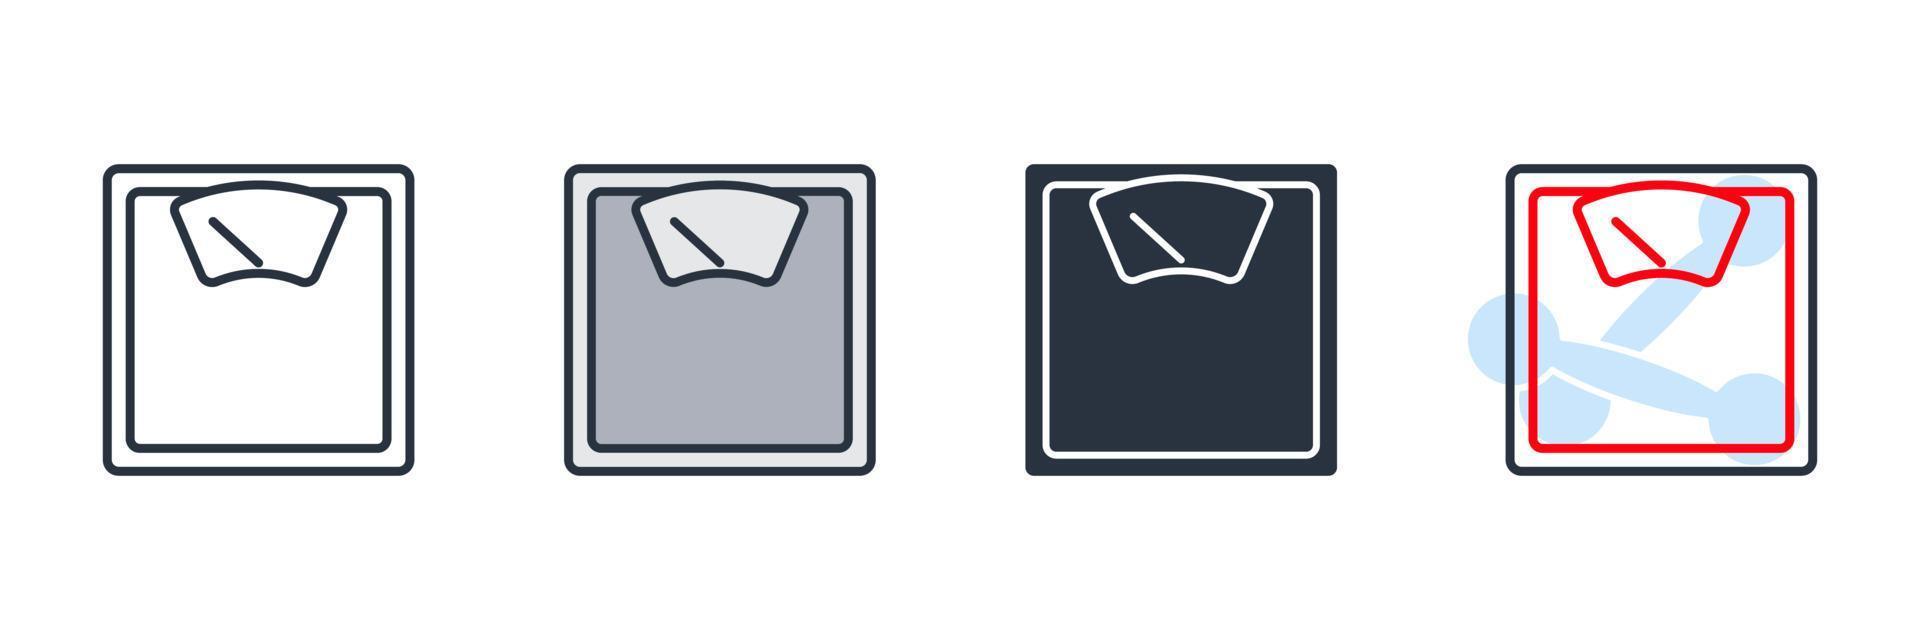 gewicht schaal pictogram logo vectorillustratie. meting symbool sjabloon voor grafische en webdesign collectie vector